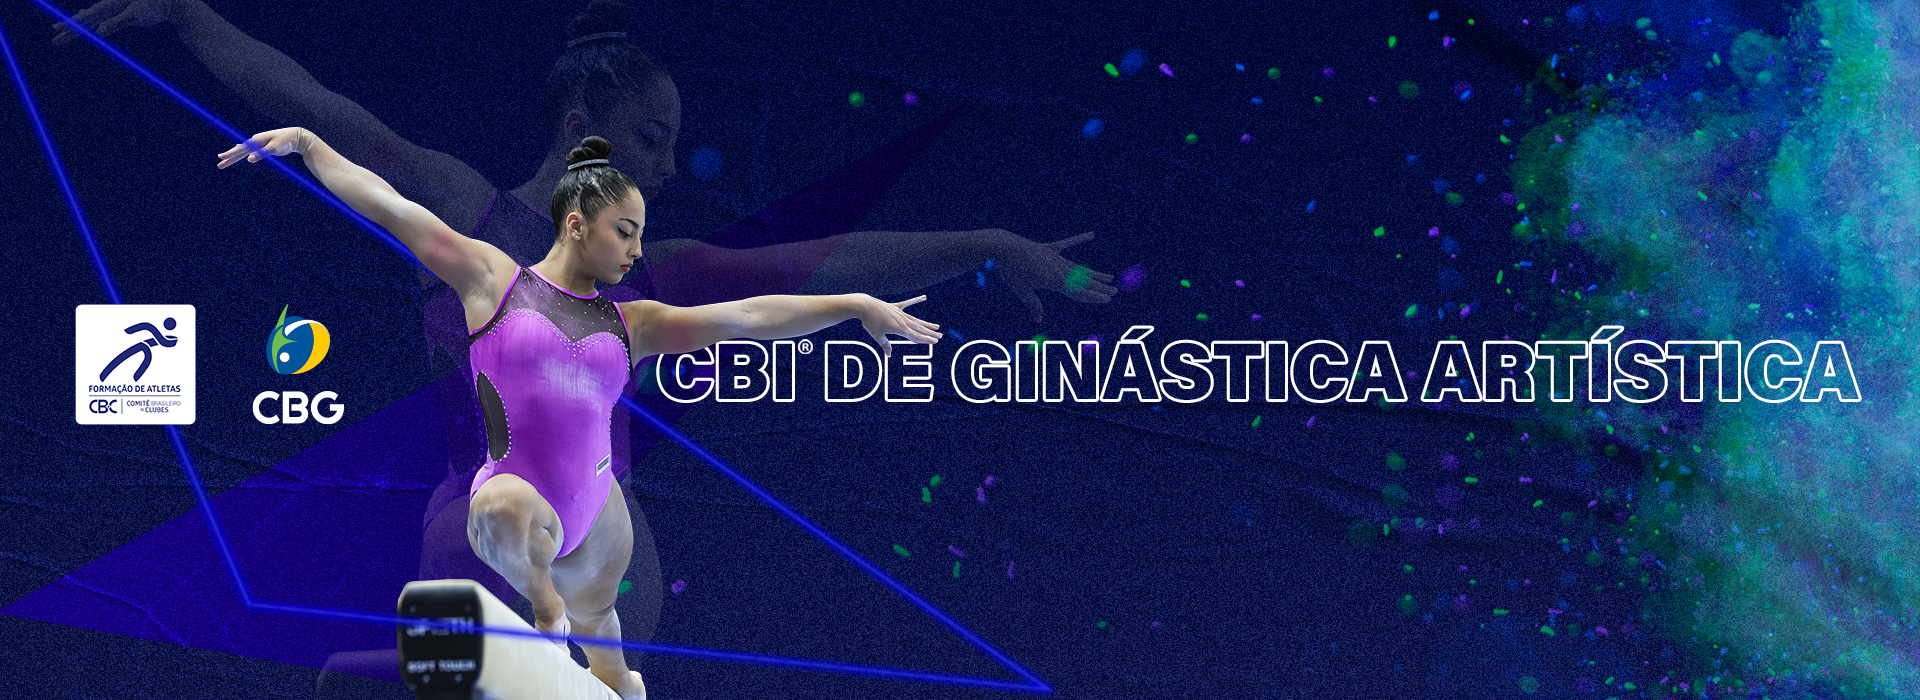 Jovens talentos e experientes ginastas brilham no CBI® - Troféu Brasil Loterias Caixa de Ginástica Artística